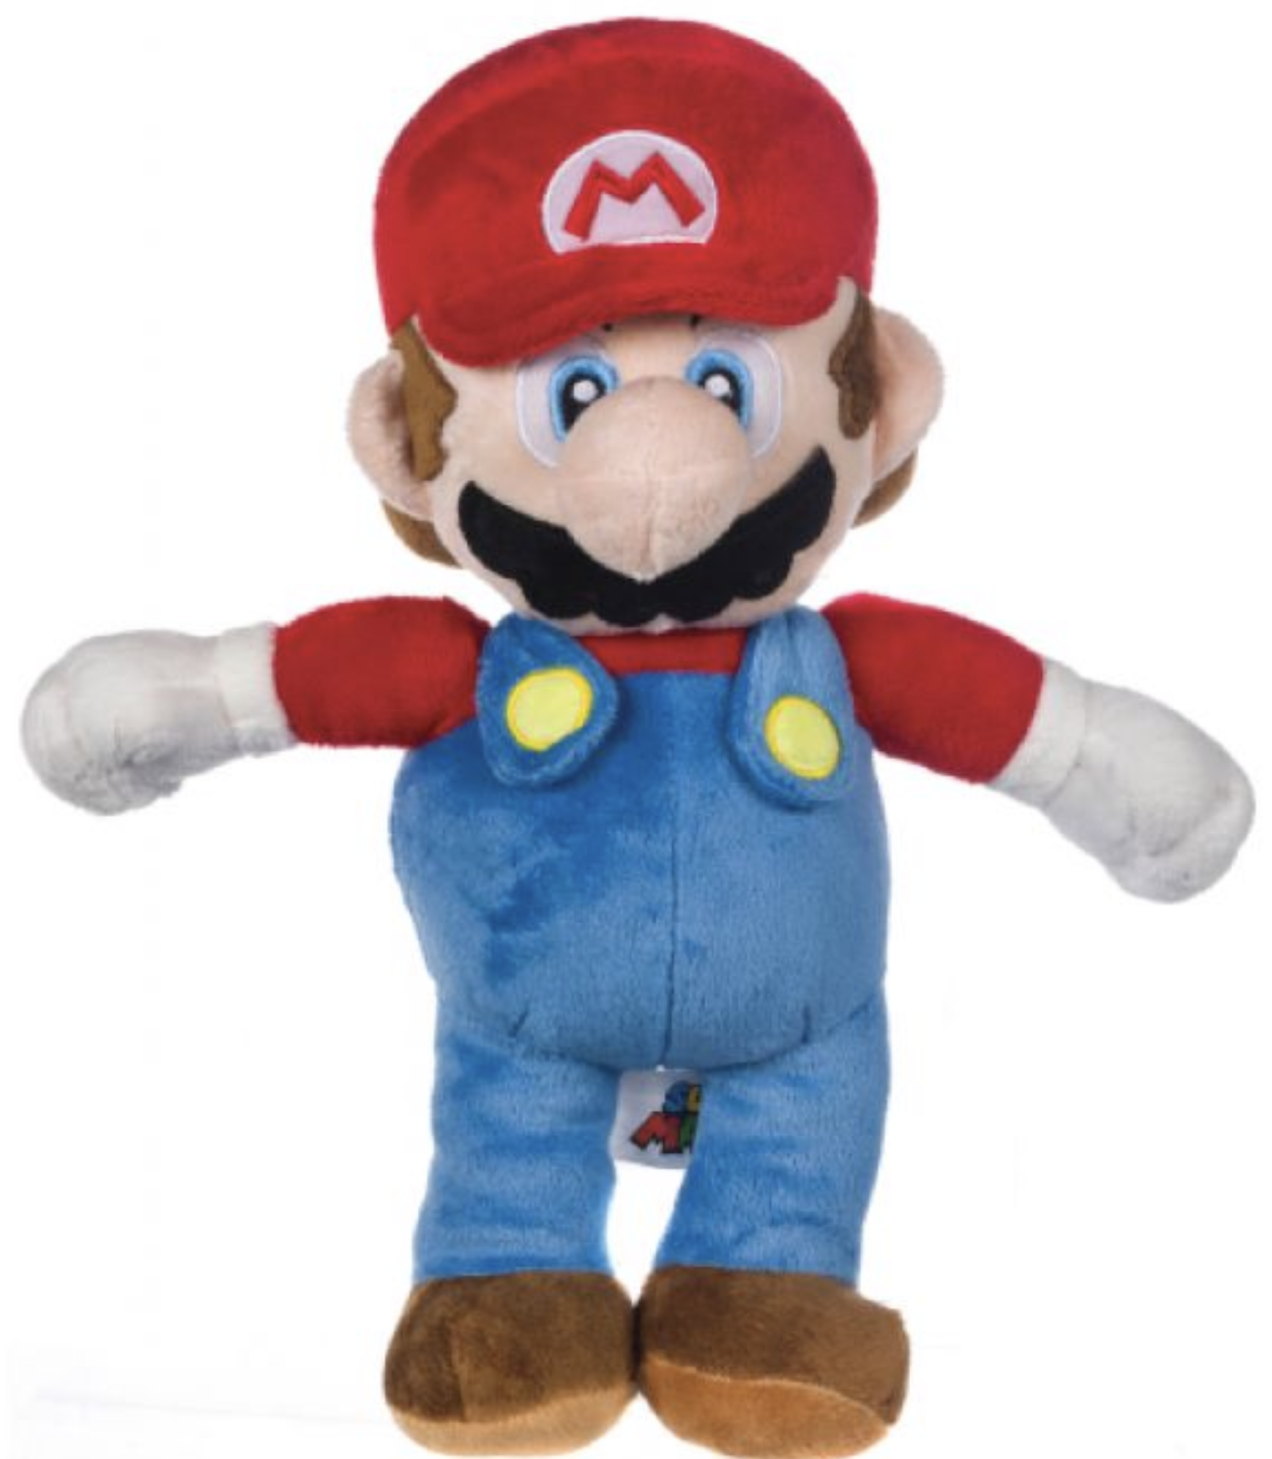 Gadget - Peluches - Nintendo - Super Mario 27cm - Fumetteria Carta